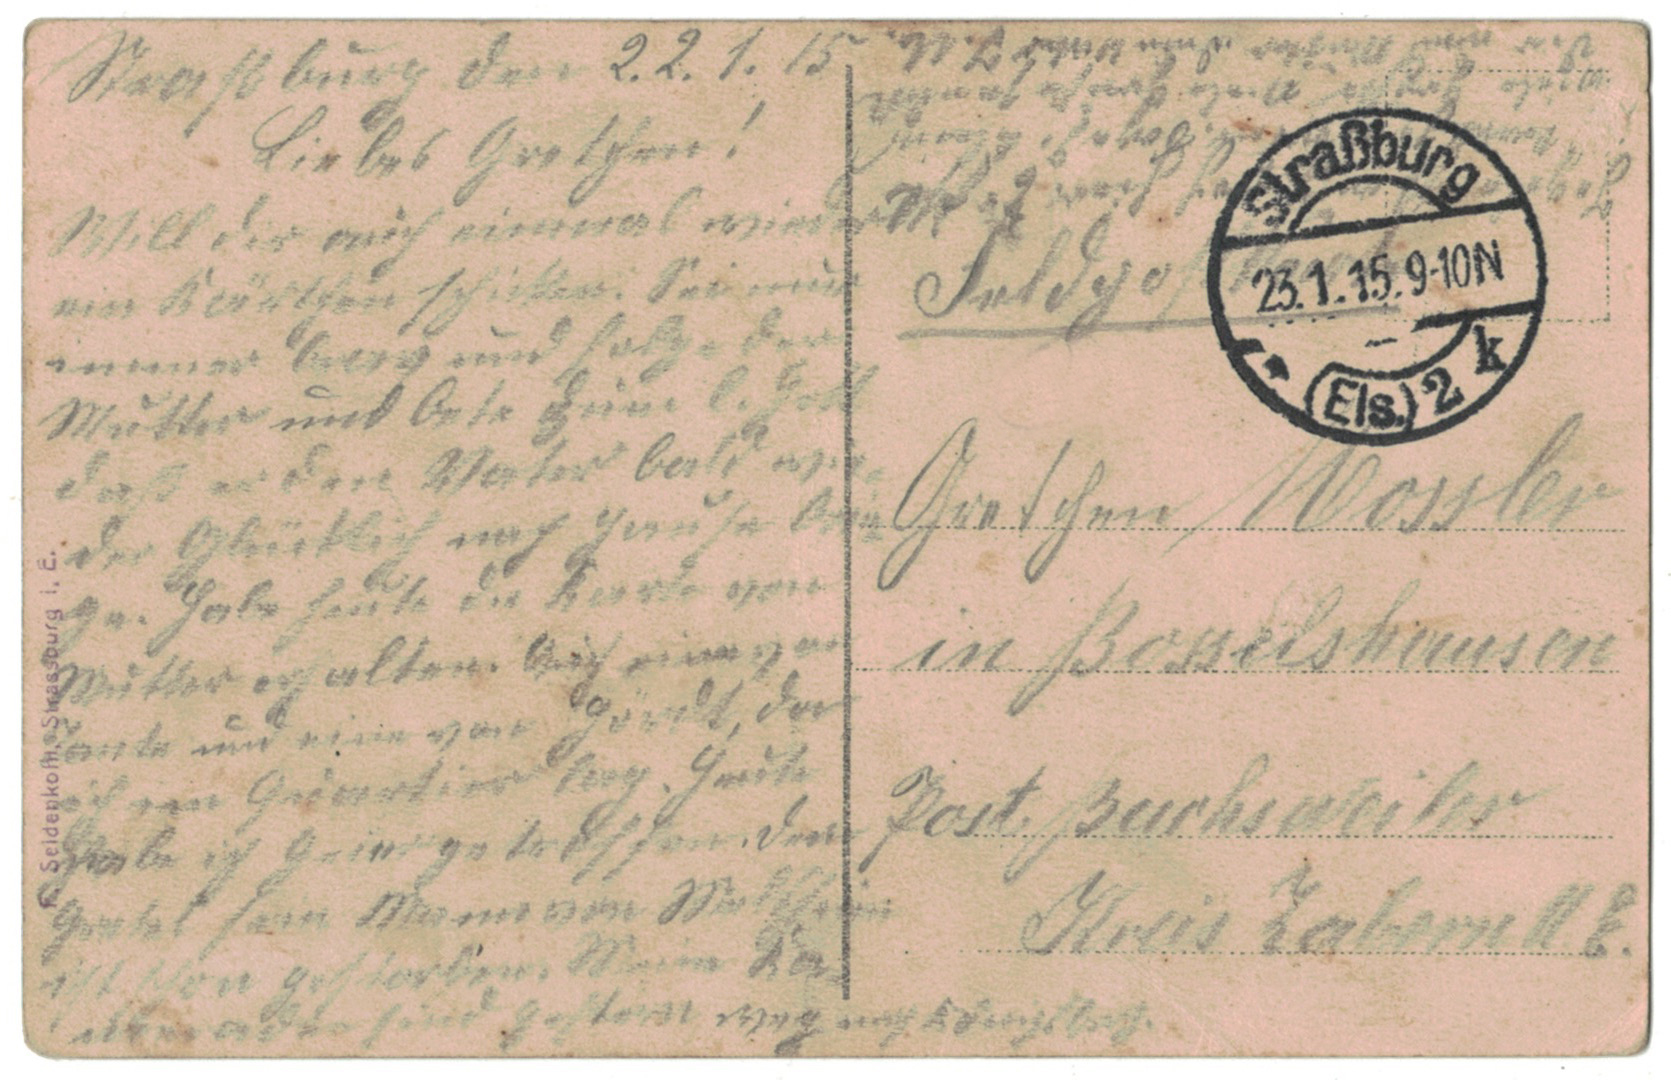 Carte Postale Allemande Lithographie - iconographie 14/18 - Casque a pointe - Prussien - Front Départ - Alsace -